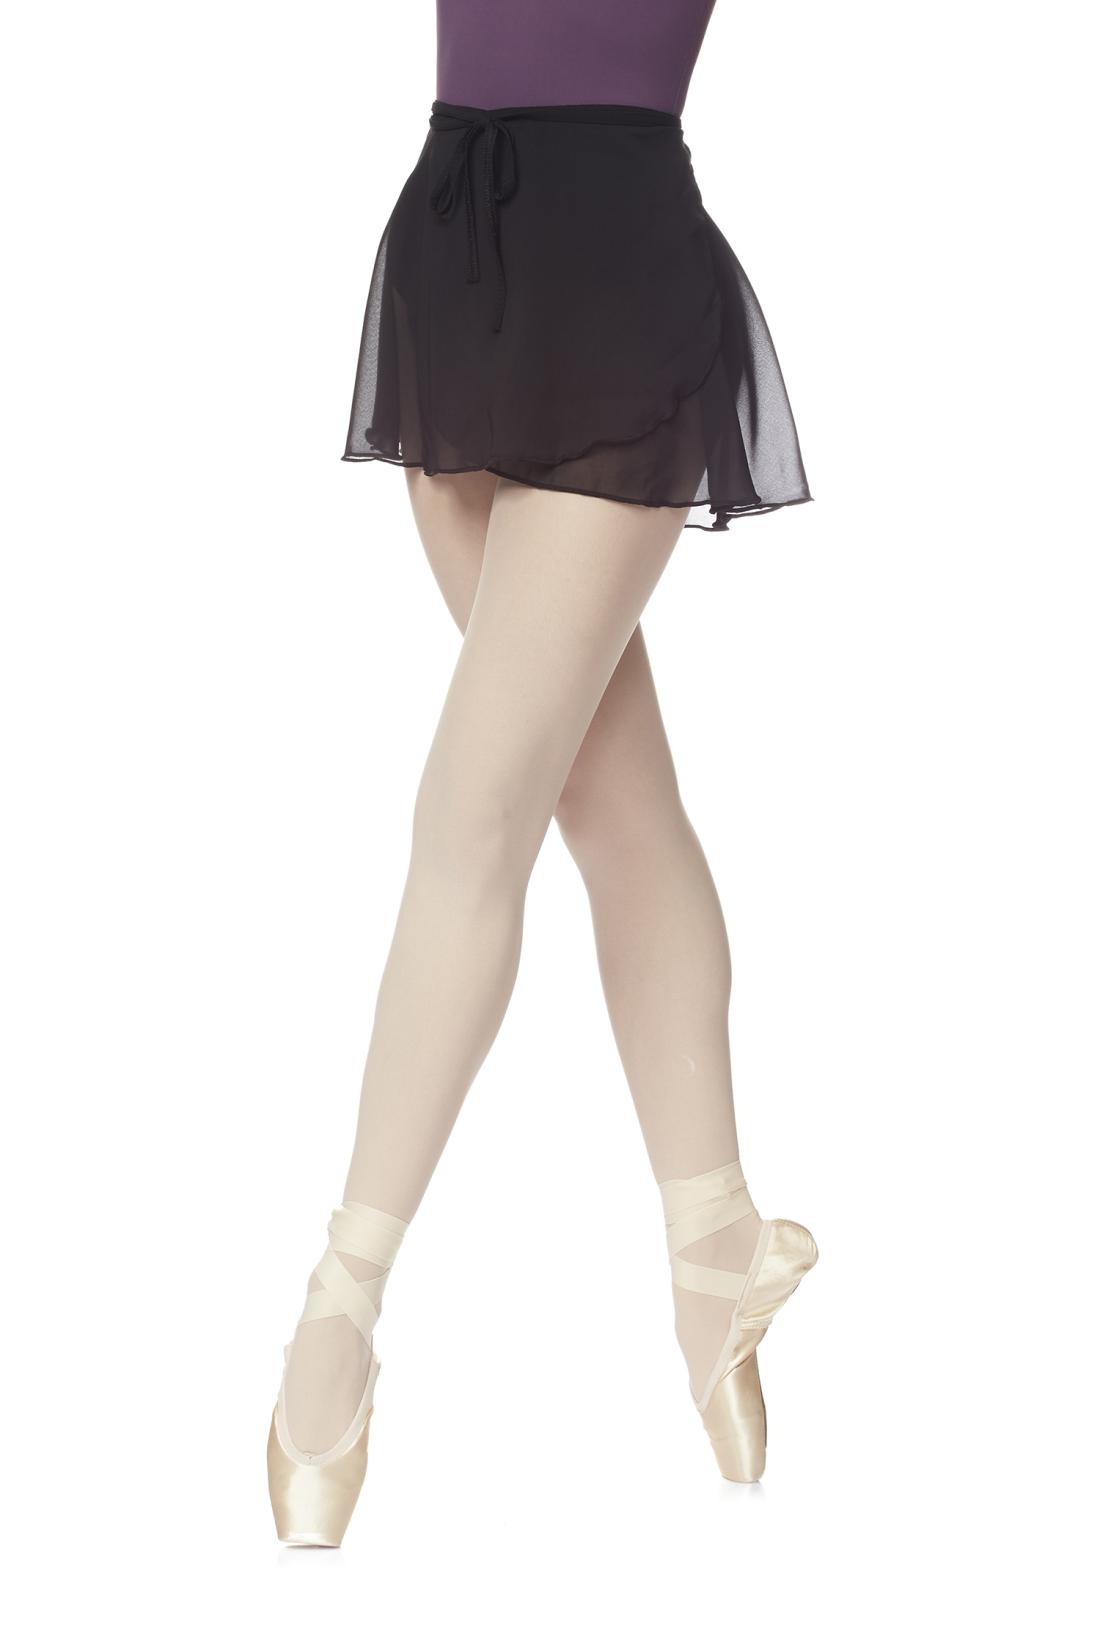 Ballettröckchen Giselle mit gekreuzten elastischen Bändern und Chiffonstoff